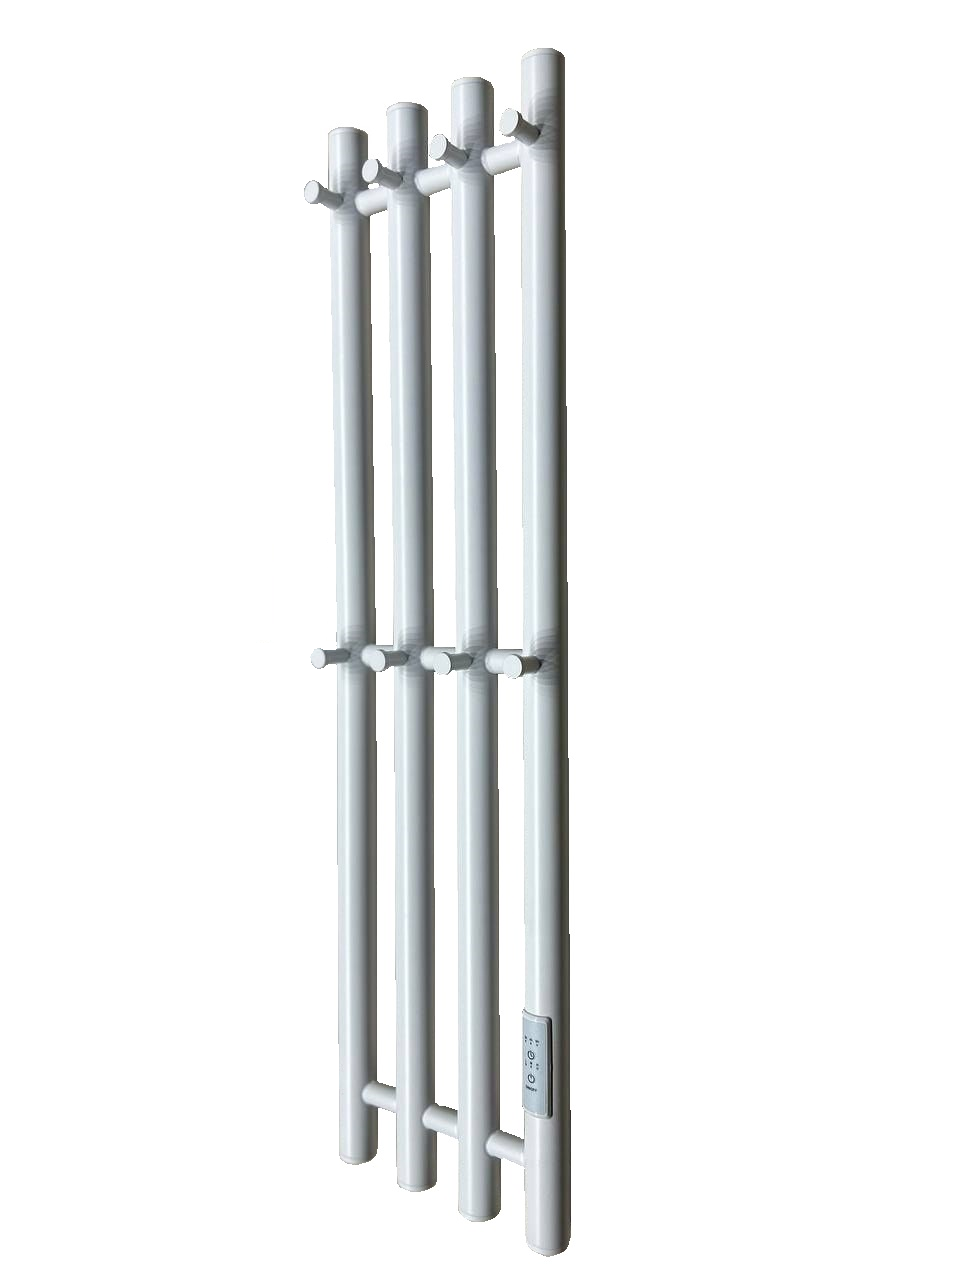 Электрический полотенцесушитель Inaro 4 высота 80 см ширина 21 см 8 крючков цвет белый матовый